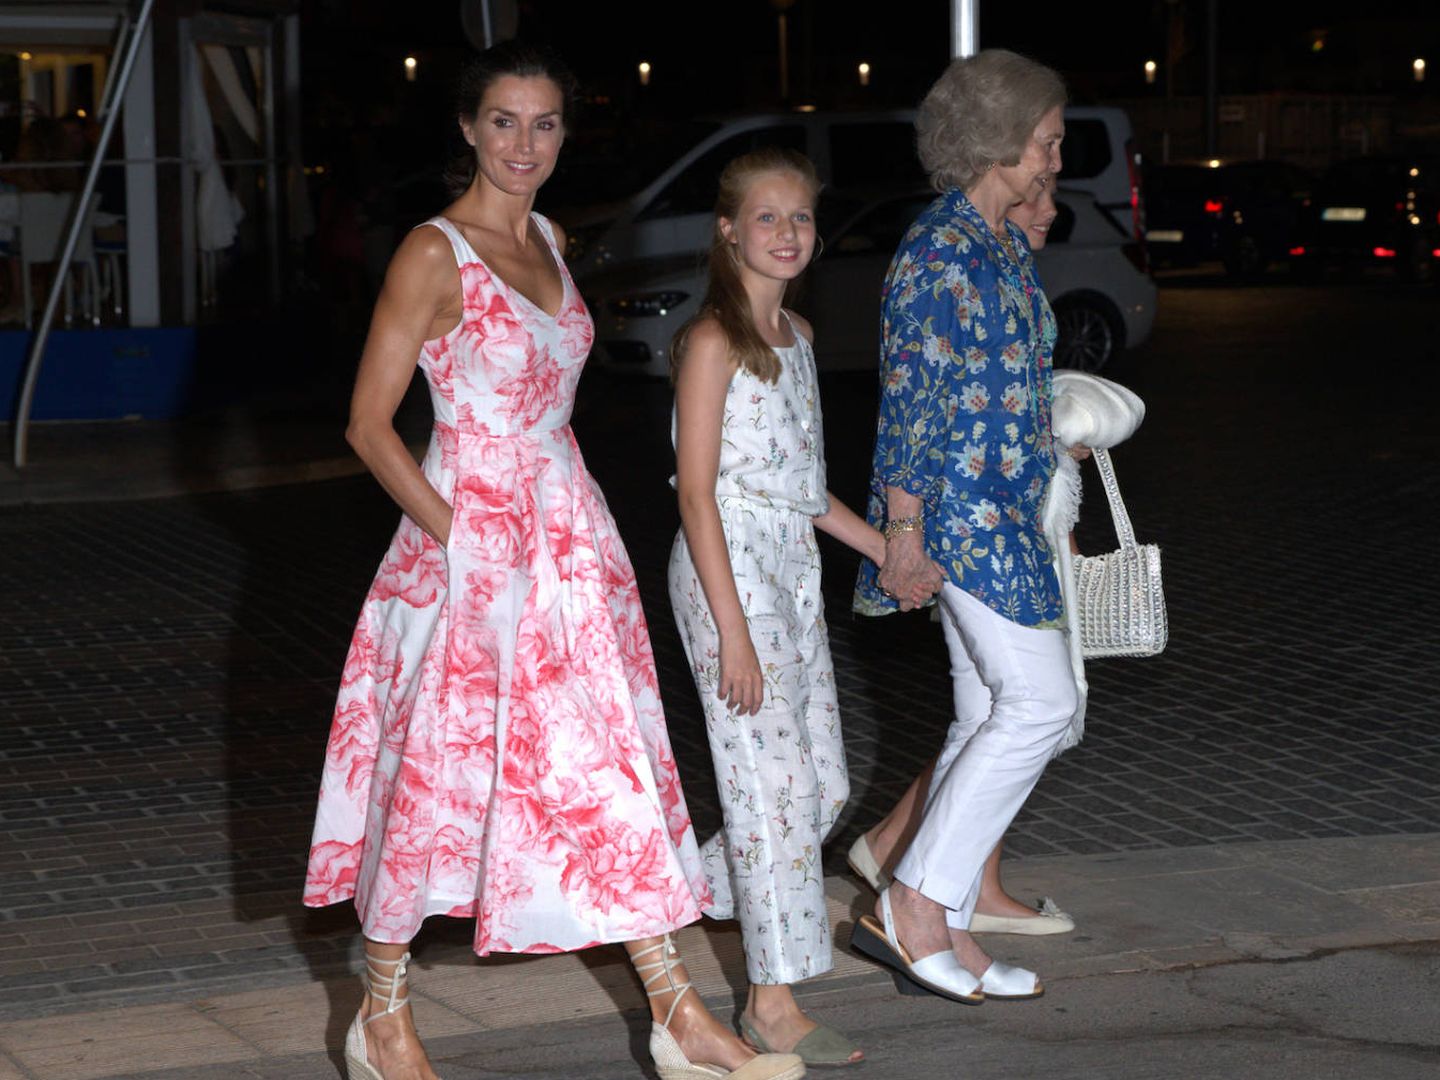 La reina Letizia camina con Doña Sofía y sus hijas al salir del restaurante. (Limited Pictures)